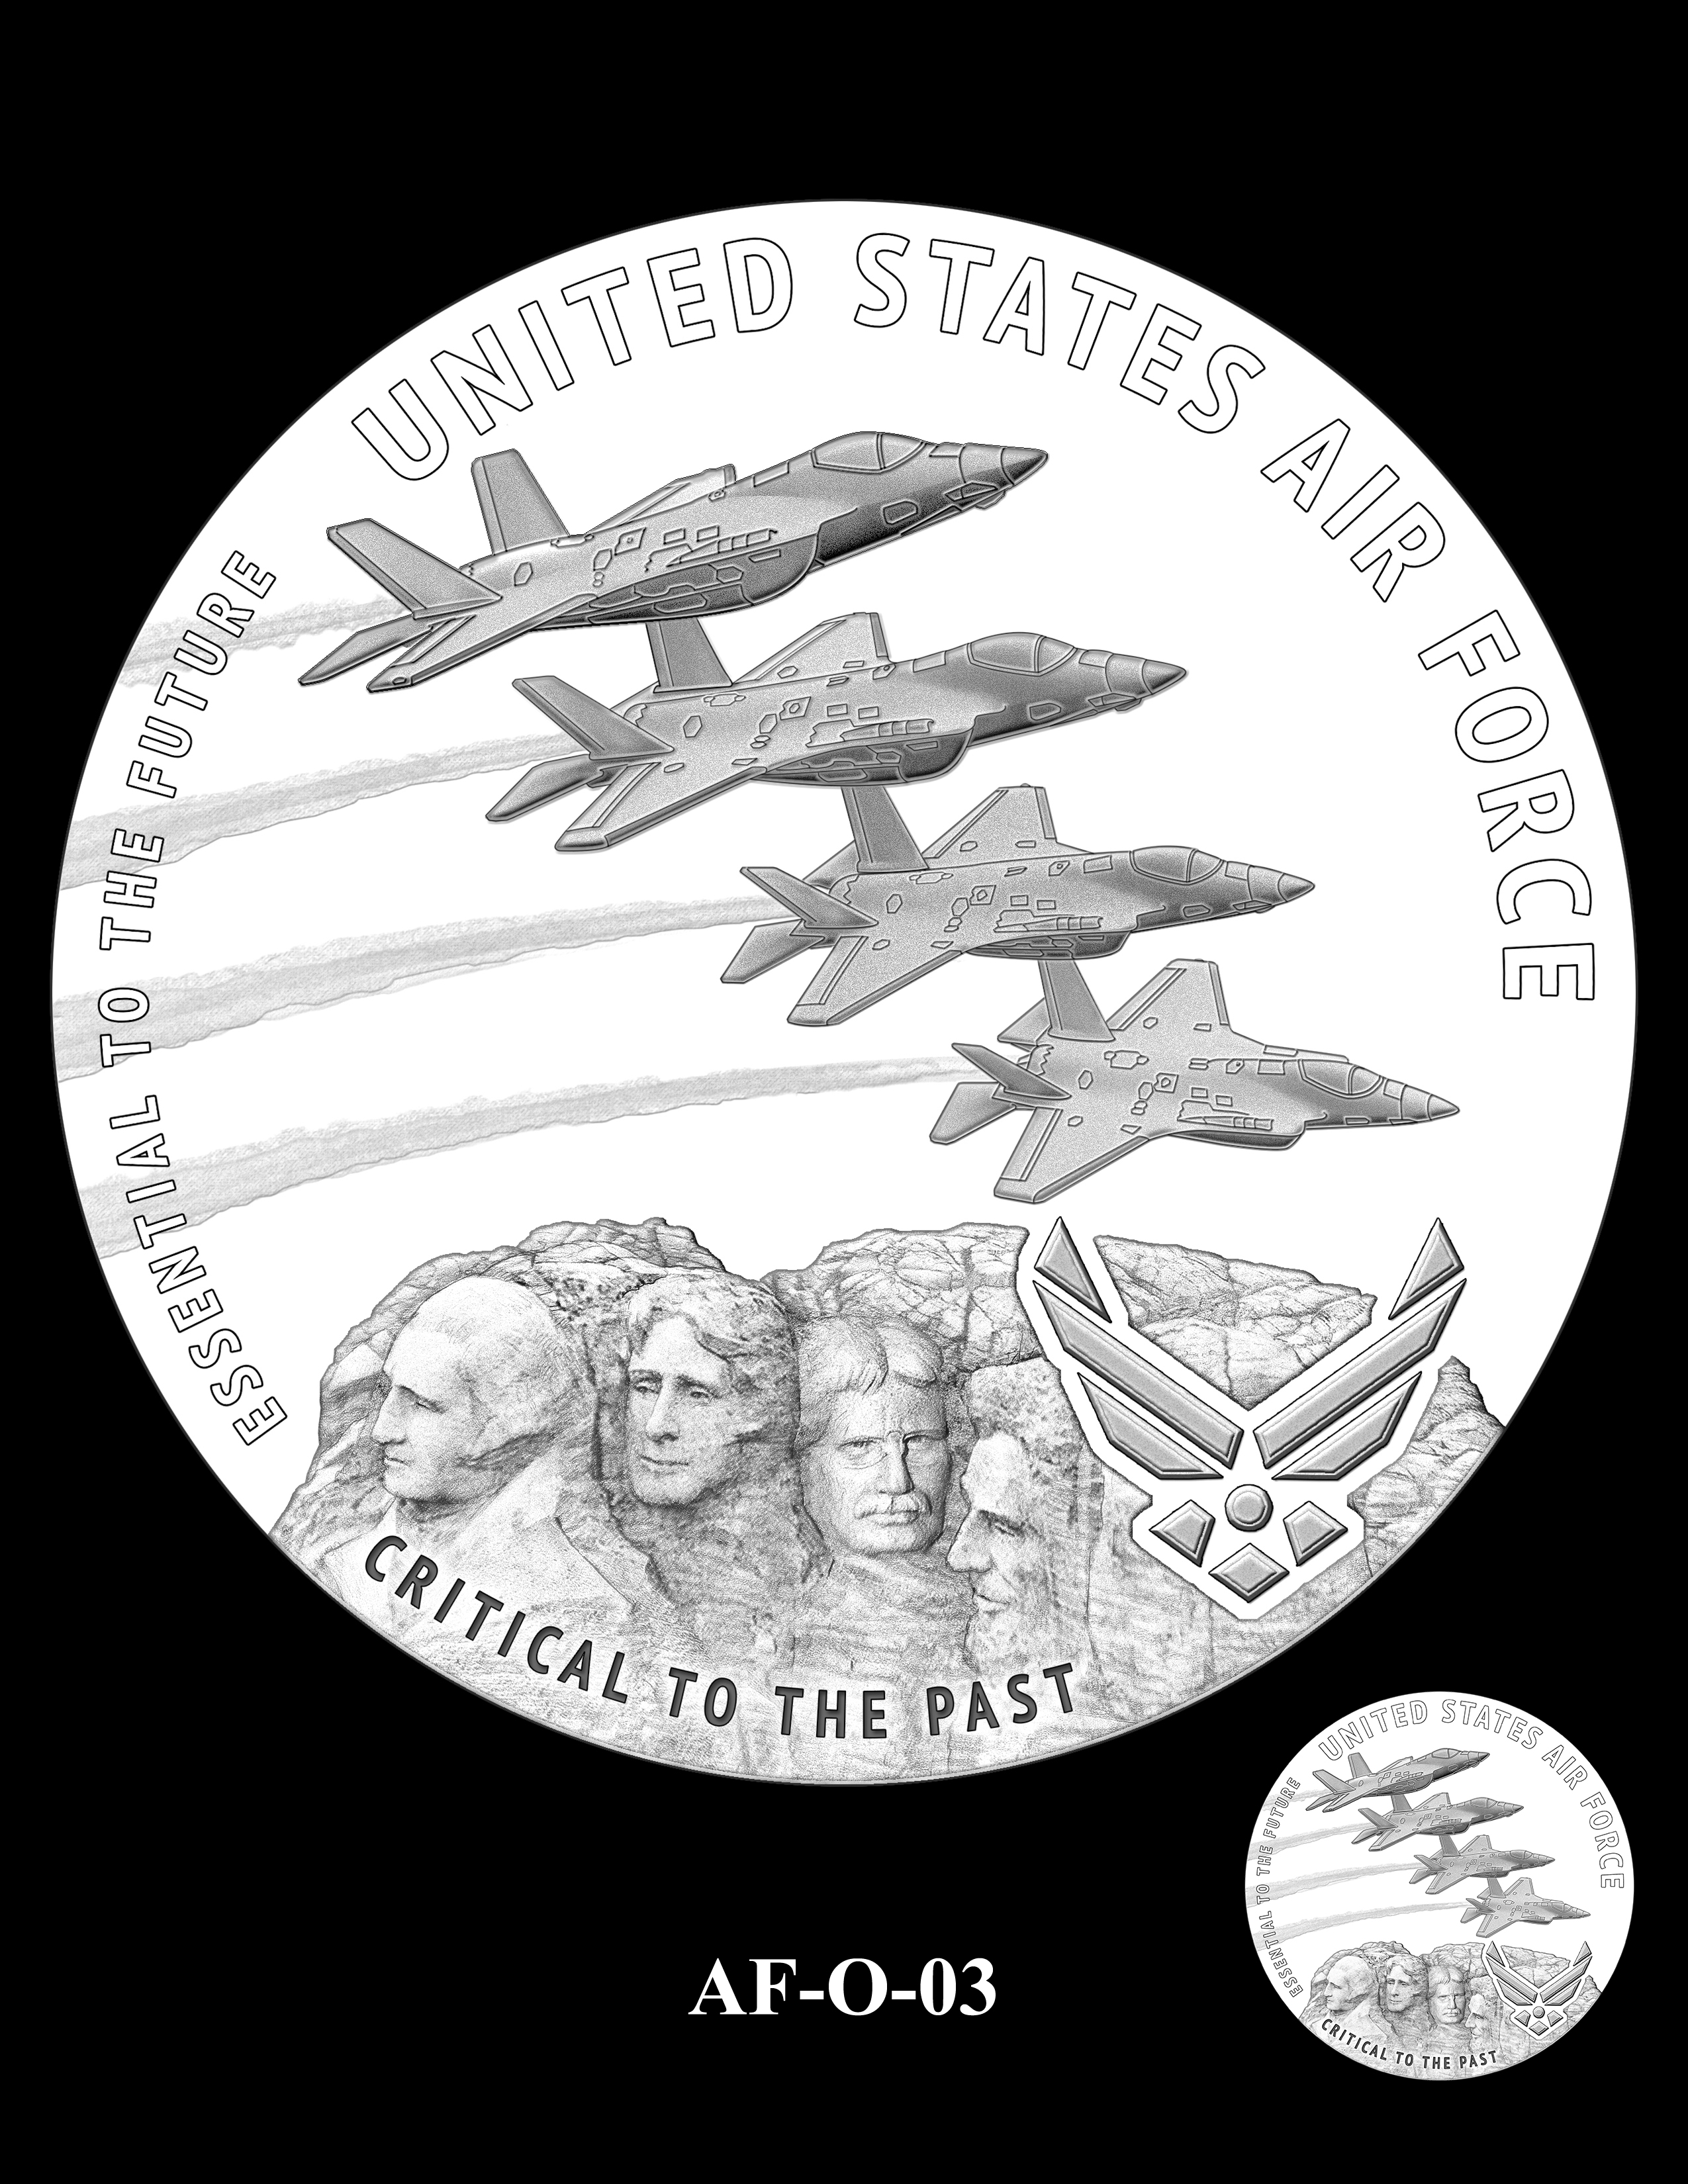 AF-O-03 -- Armed Forces Medal - Air Force